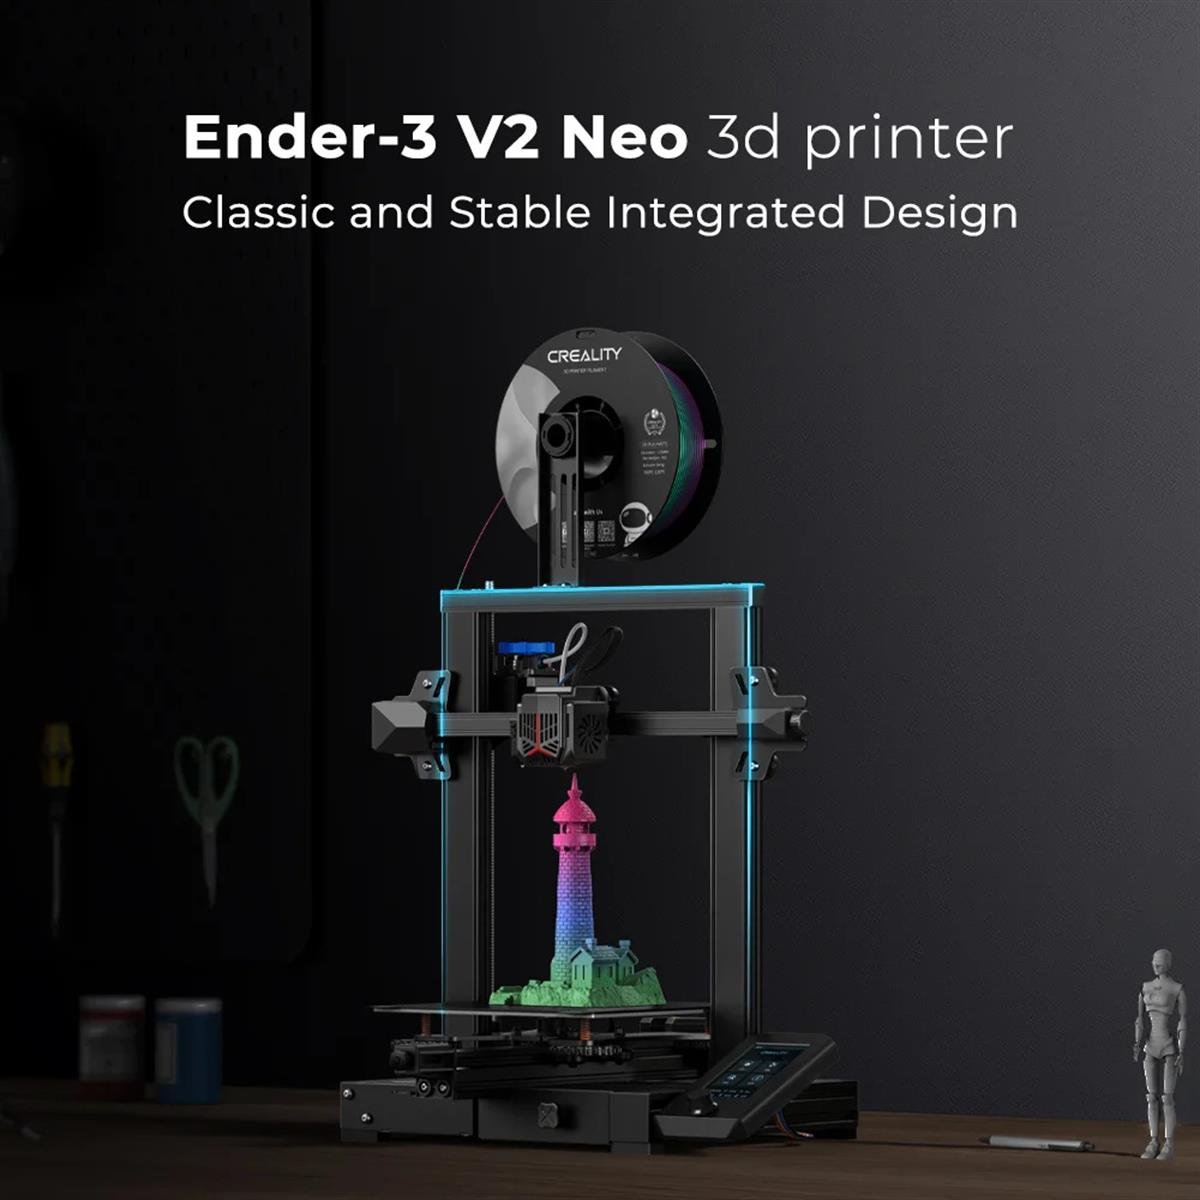 Ender-3 V2 Neo